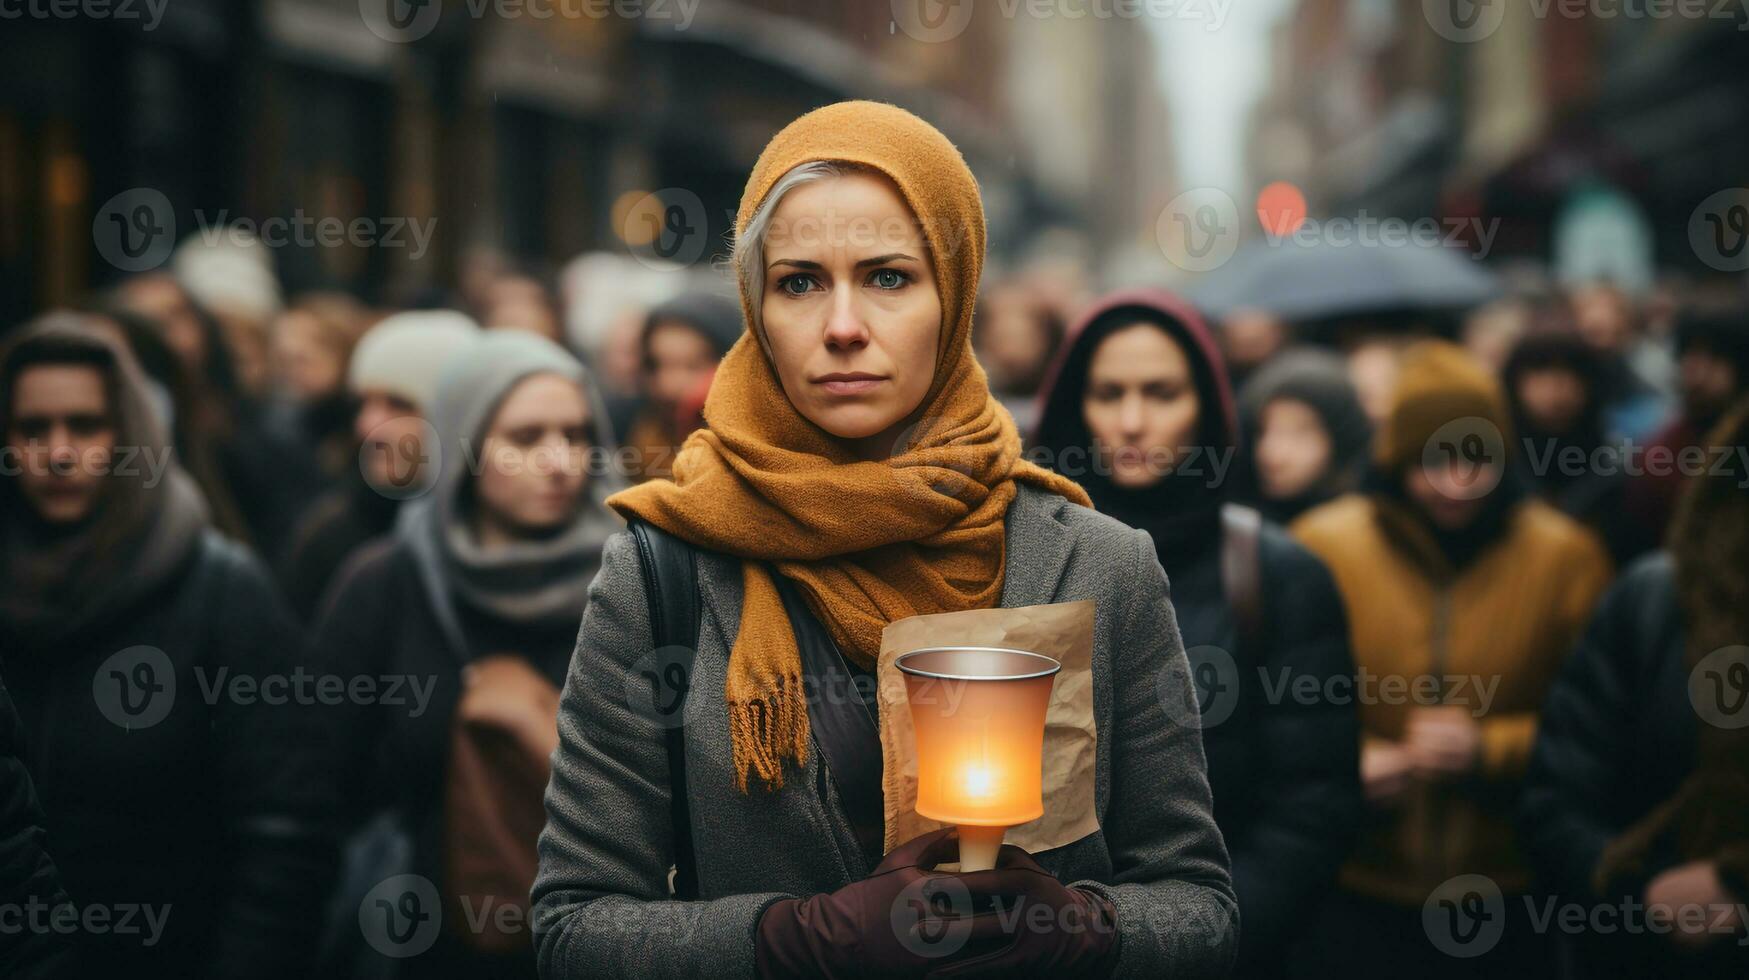 internazionale avvertimento per combattere islamofobia foto